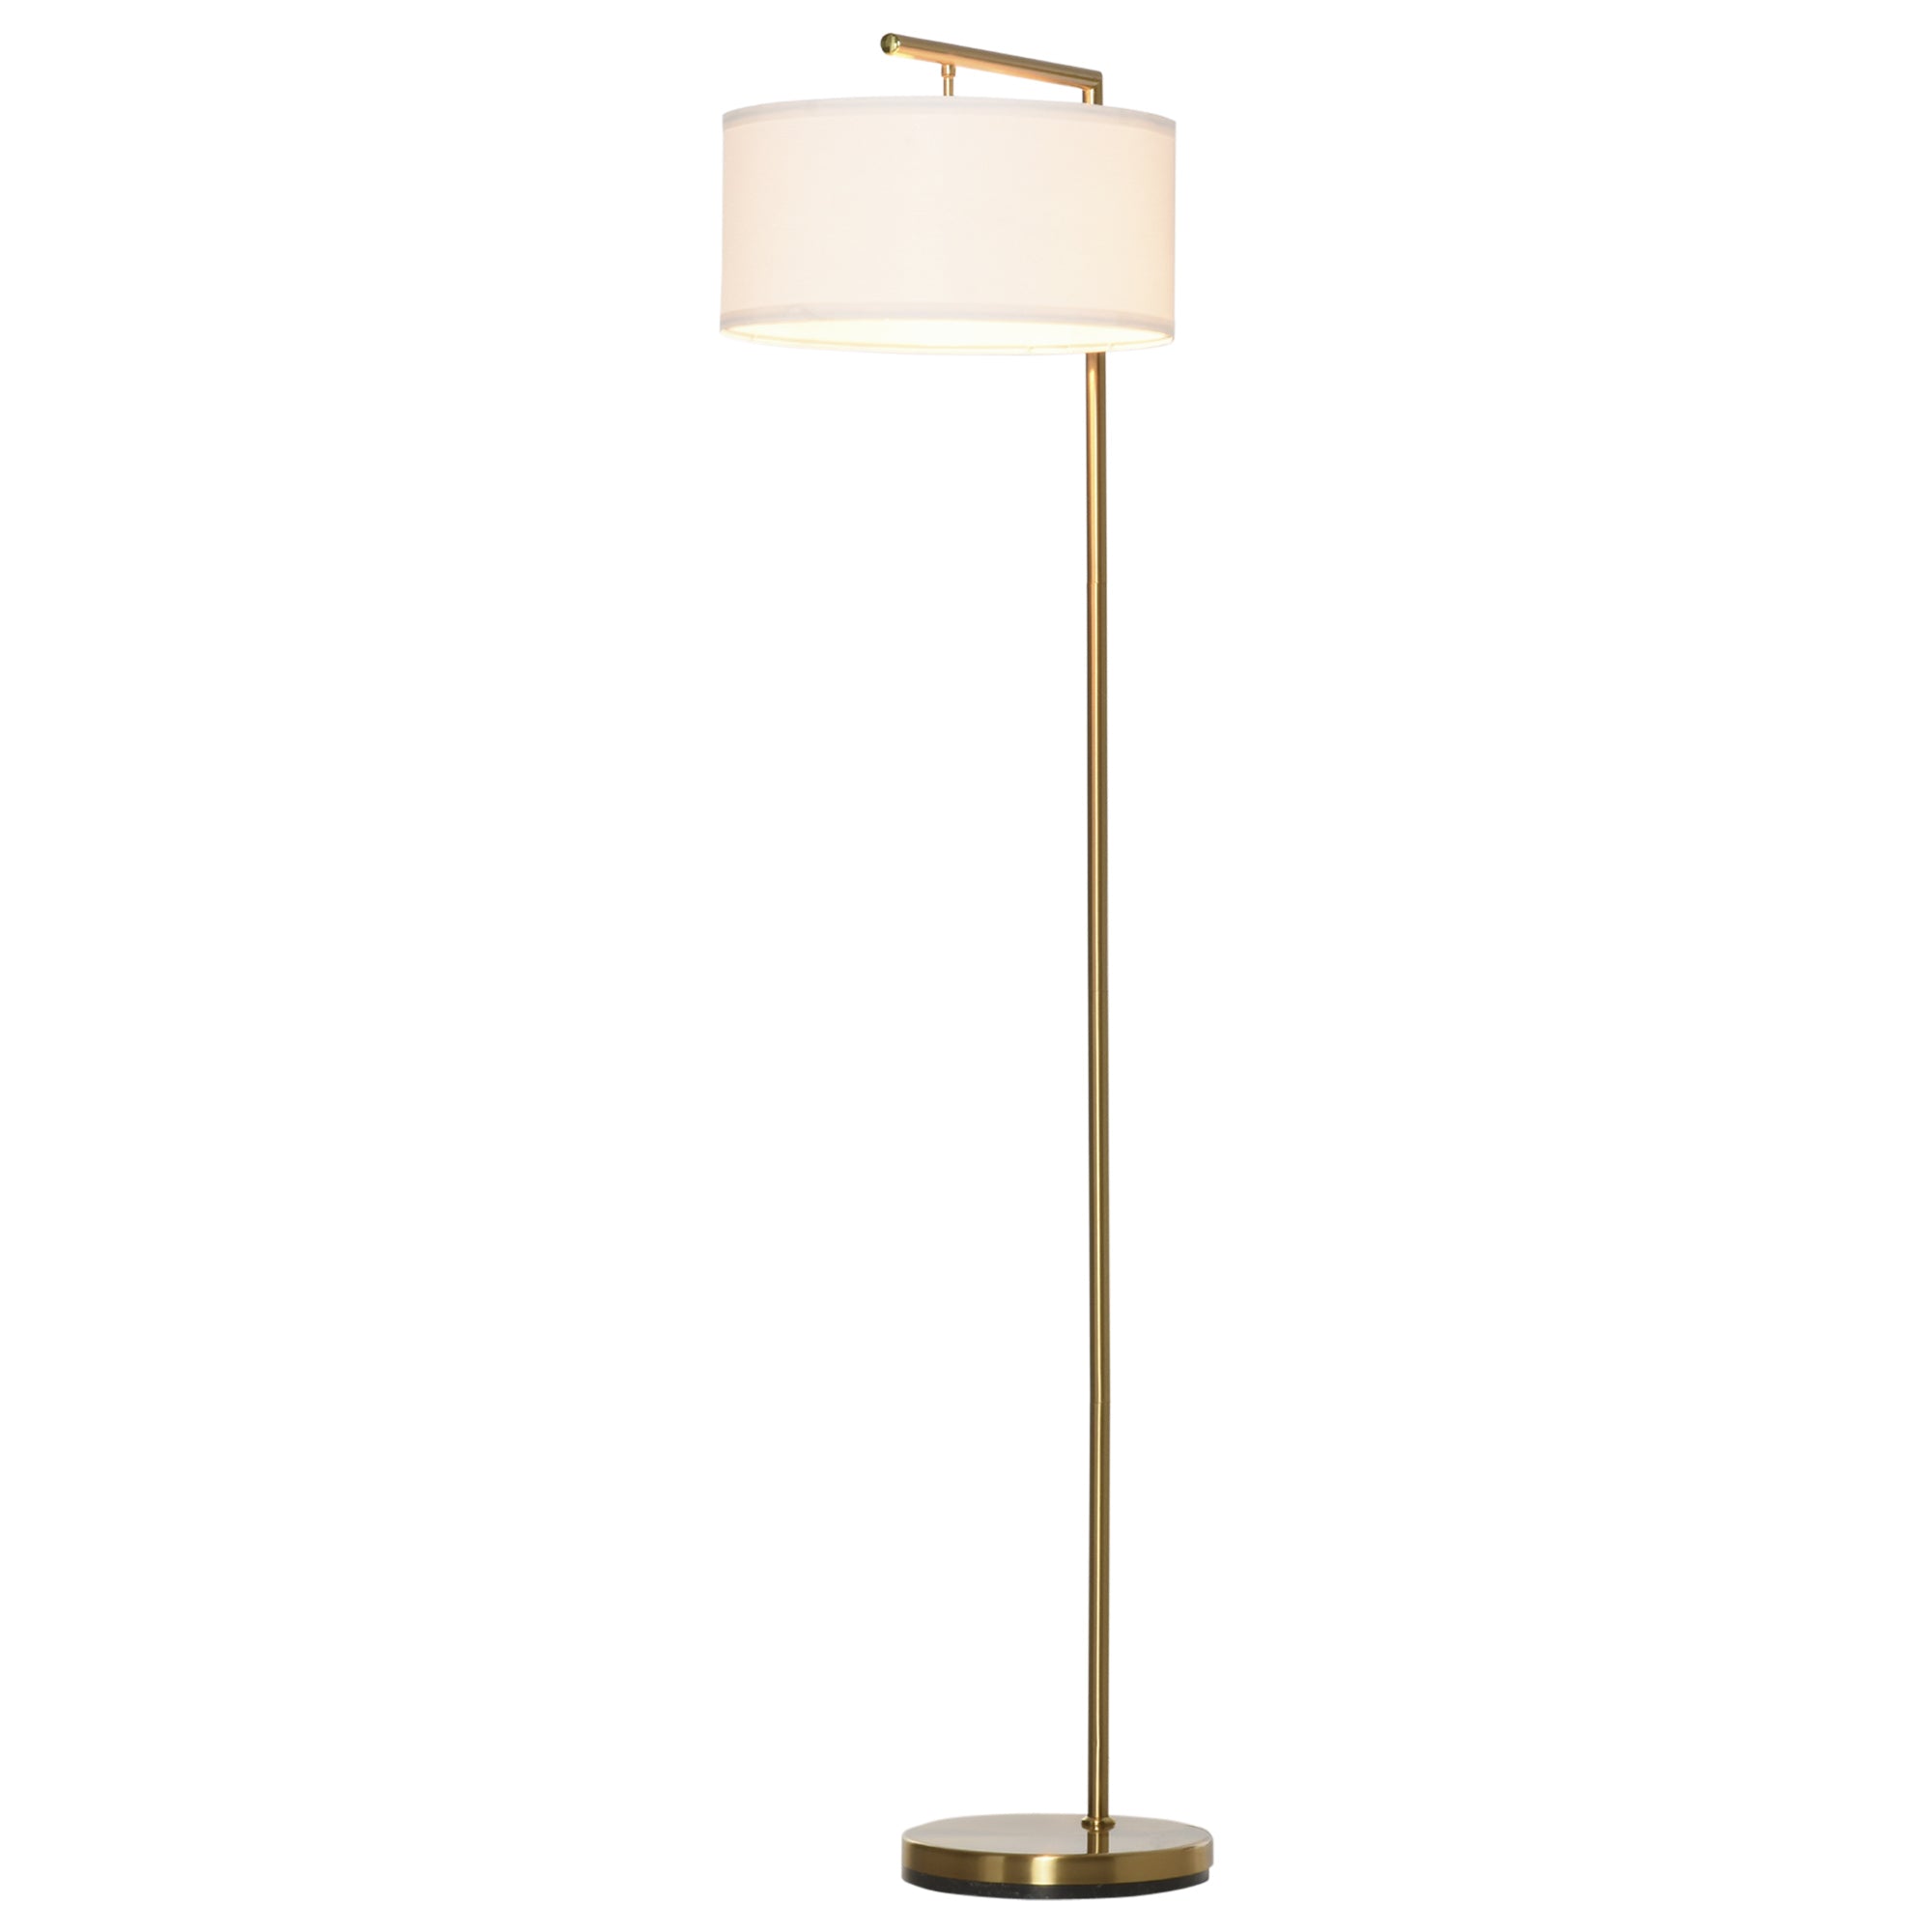 Nancy's Springville Floor Lamp - Steel/Linen - Classic - Gold - 47 x 37 x 153 cm